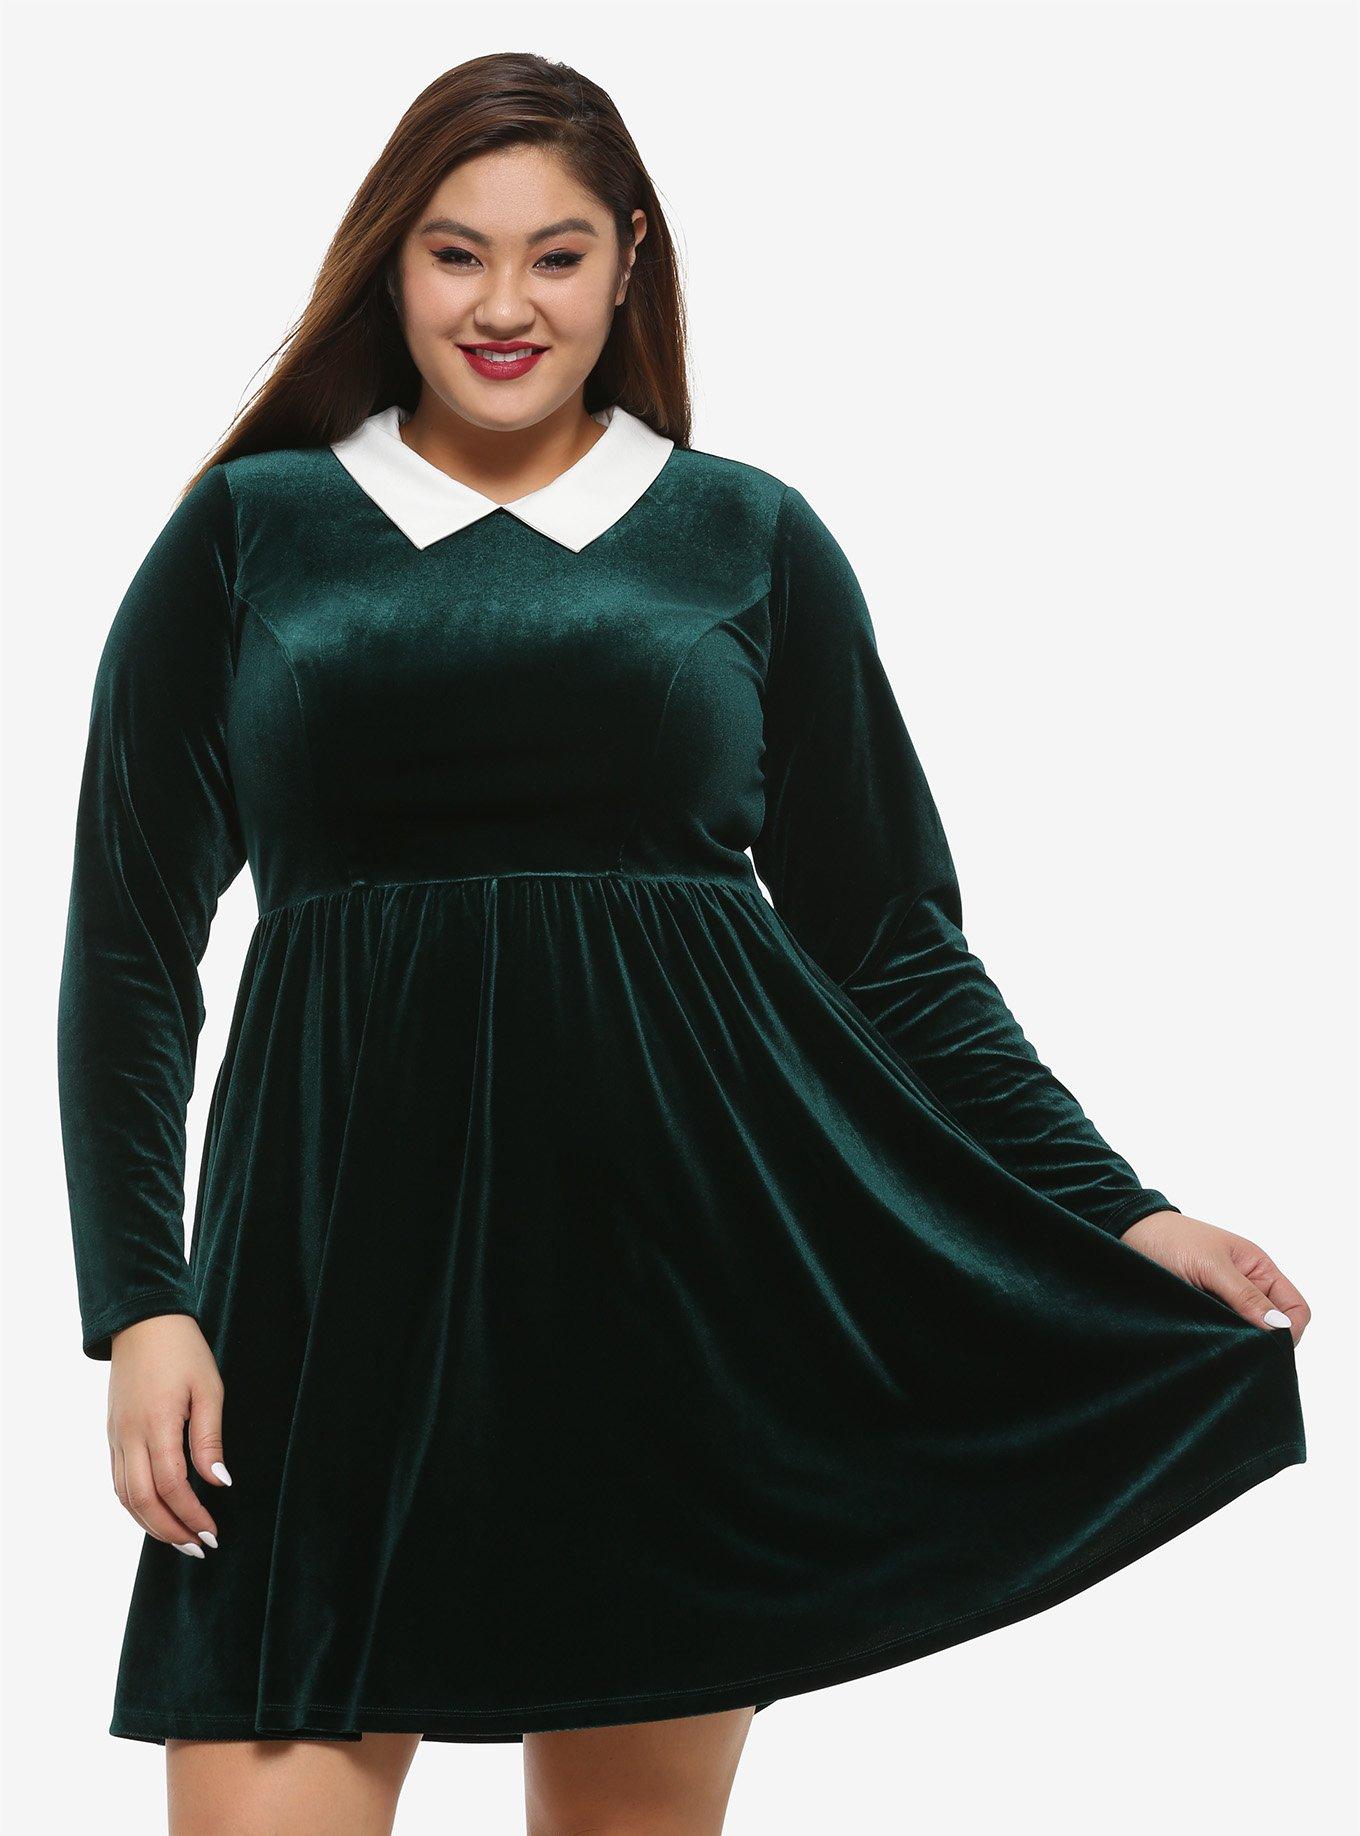 Green Velvet Long-Sleeve Dress Plus Size, FOREST GREEN, hi-res